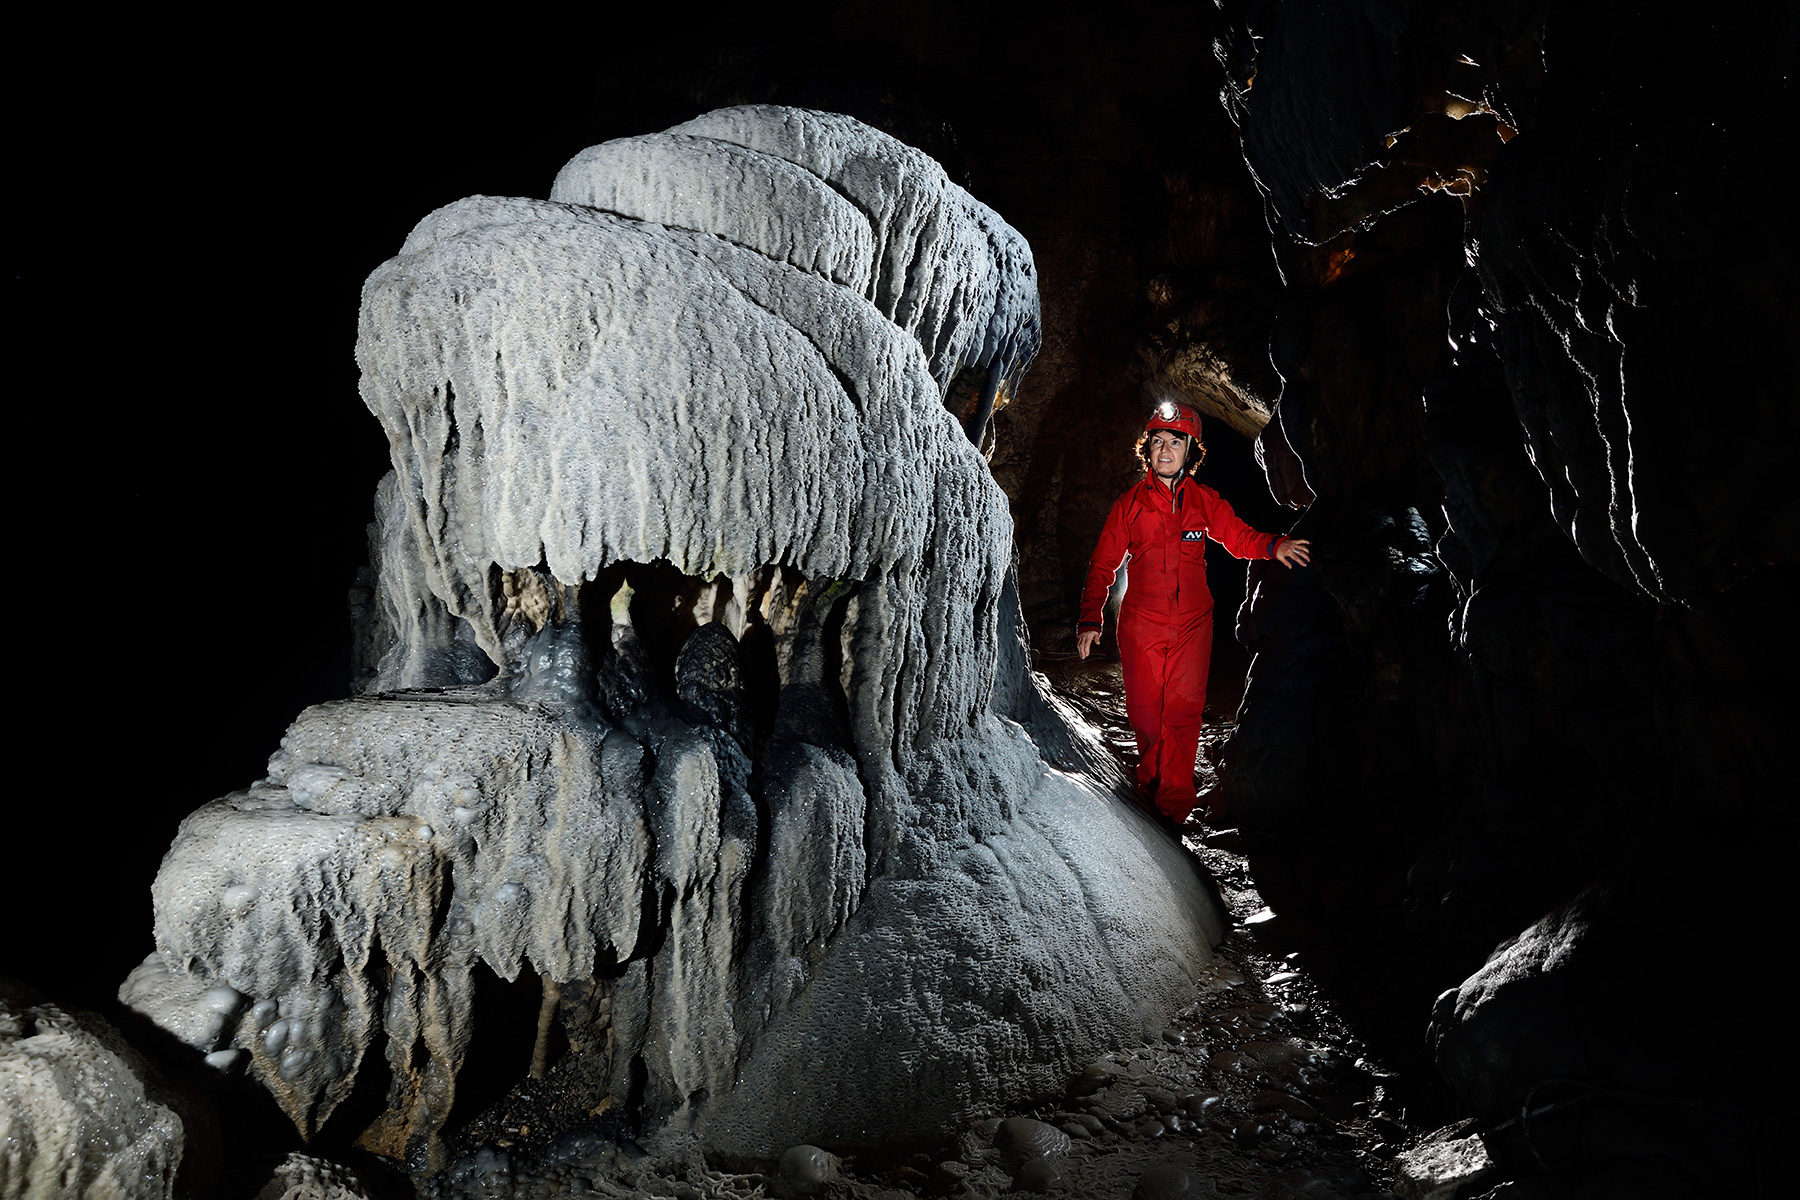 Grotte de Han (partie touristique) - Le Berceau de Proserpine : massif stalagmitique de calcite blanche 